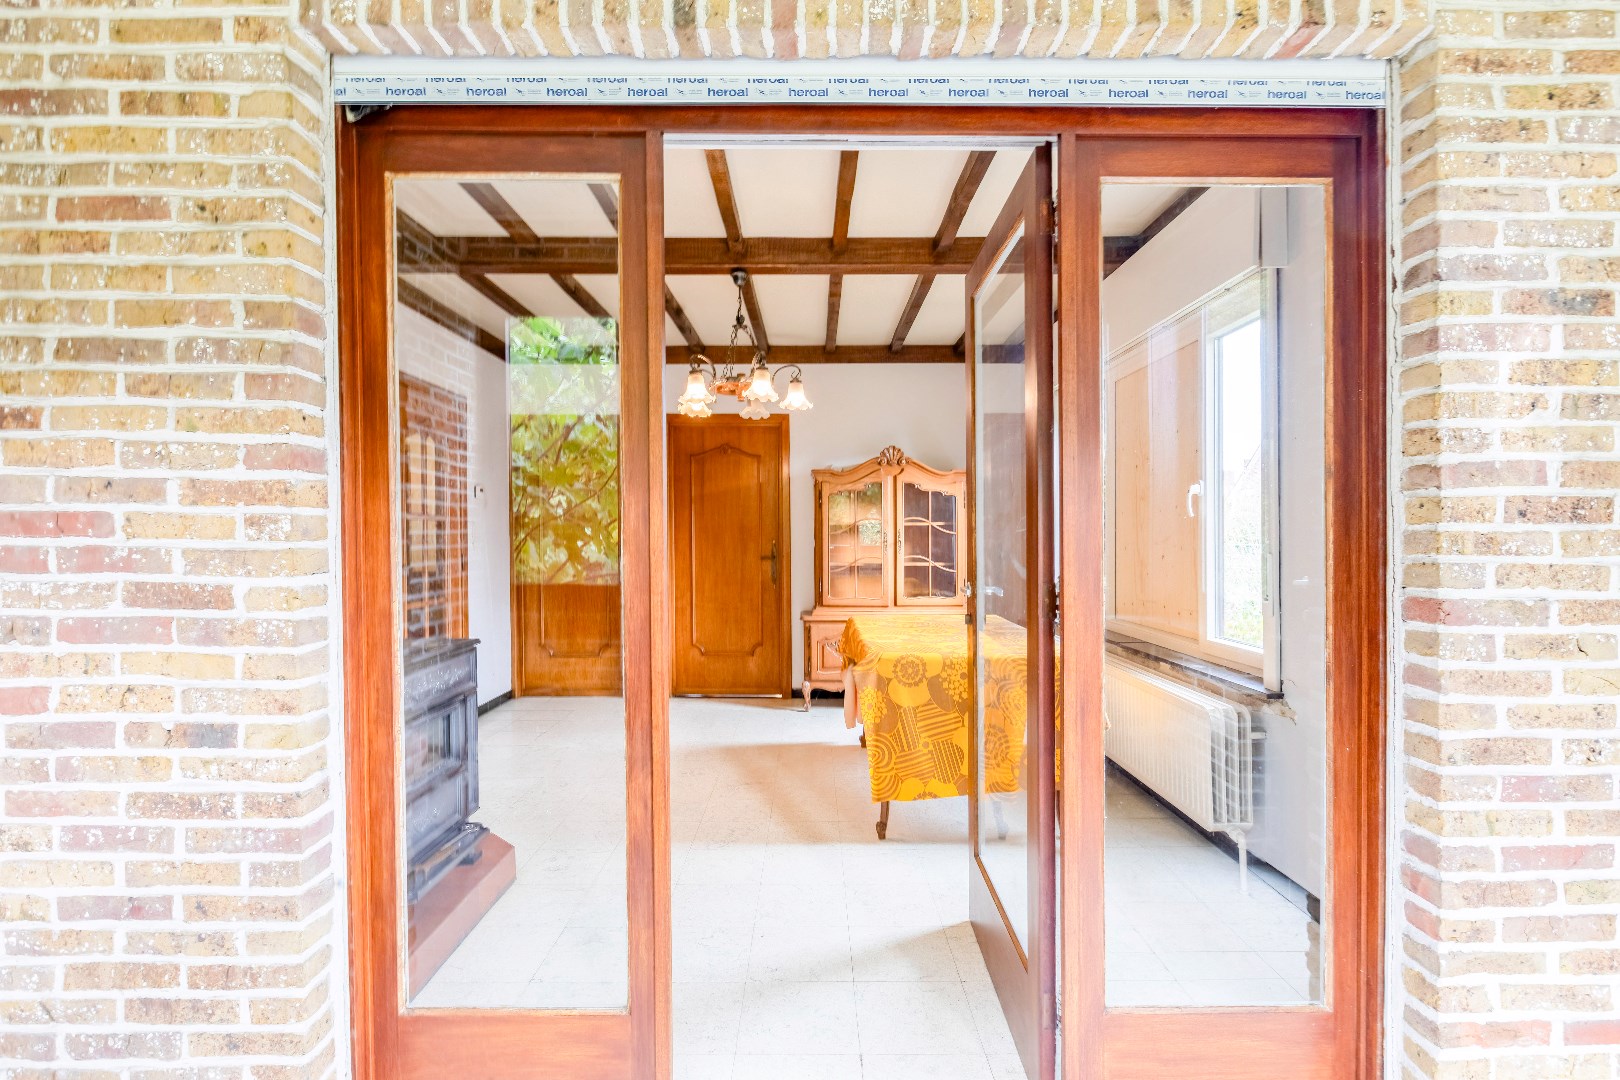 Gunstig gelegen bungalow met ruime zolder en volledig onderkelderd 